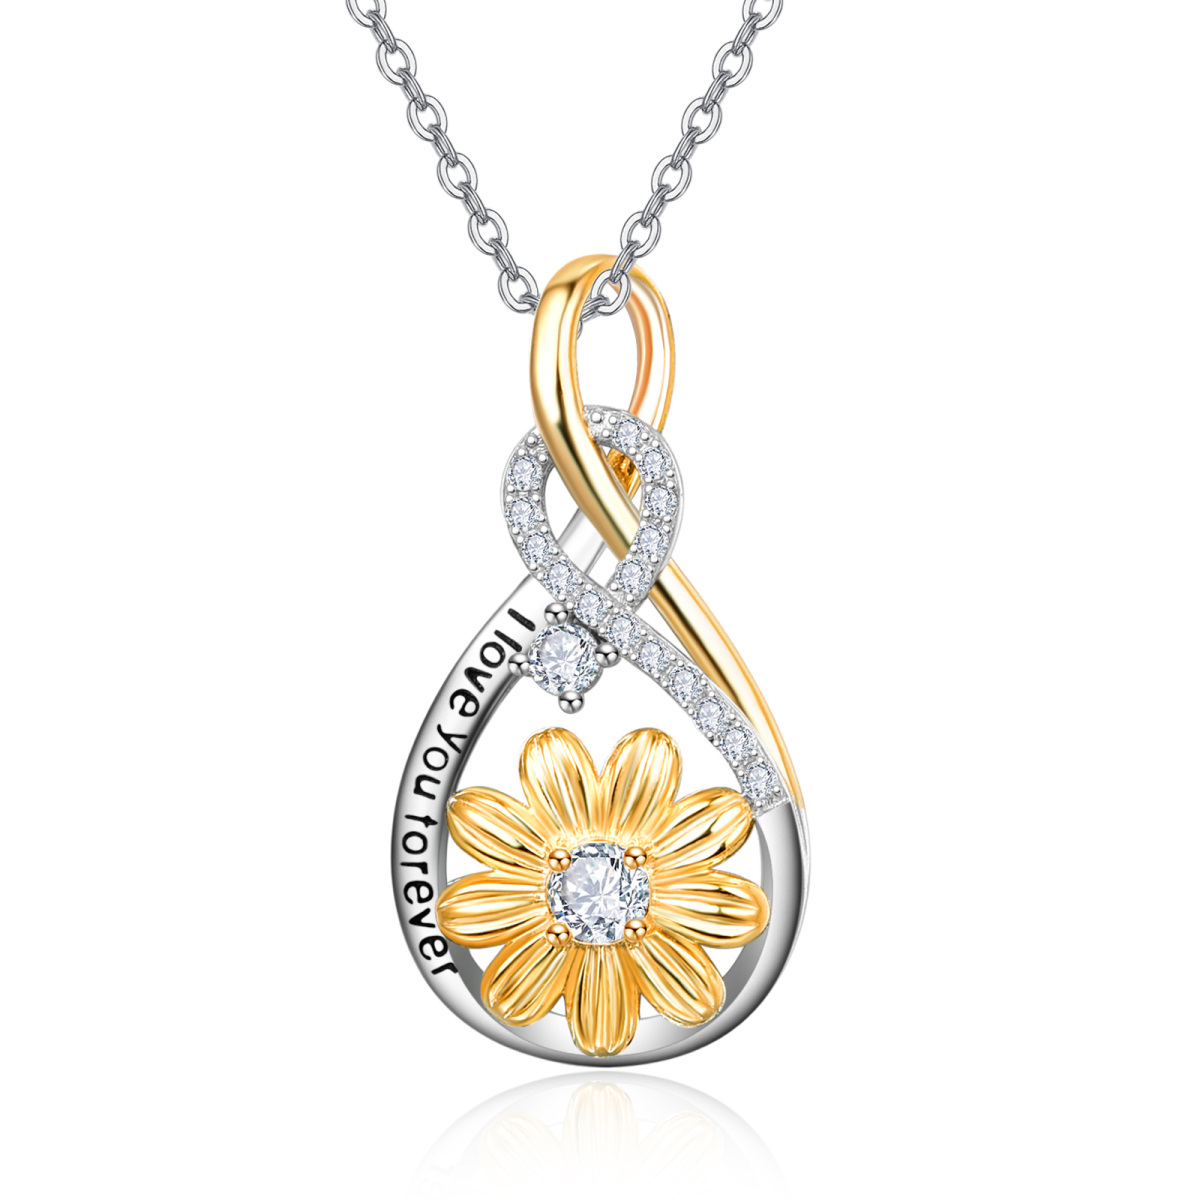 Halskette mit kreisförmigem Anhänger aus Sterlingsilber mit Sonnenblume und Unendlichkeitssymbol und eingraviertem Wort-1